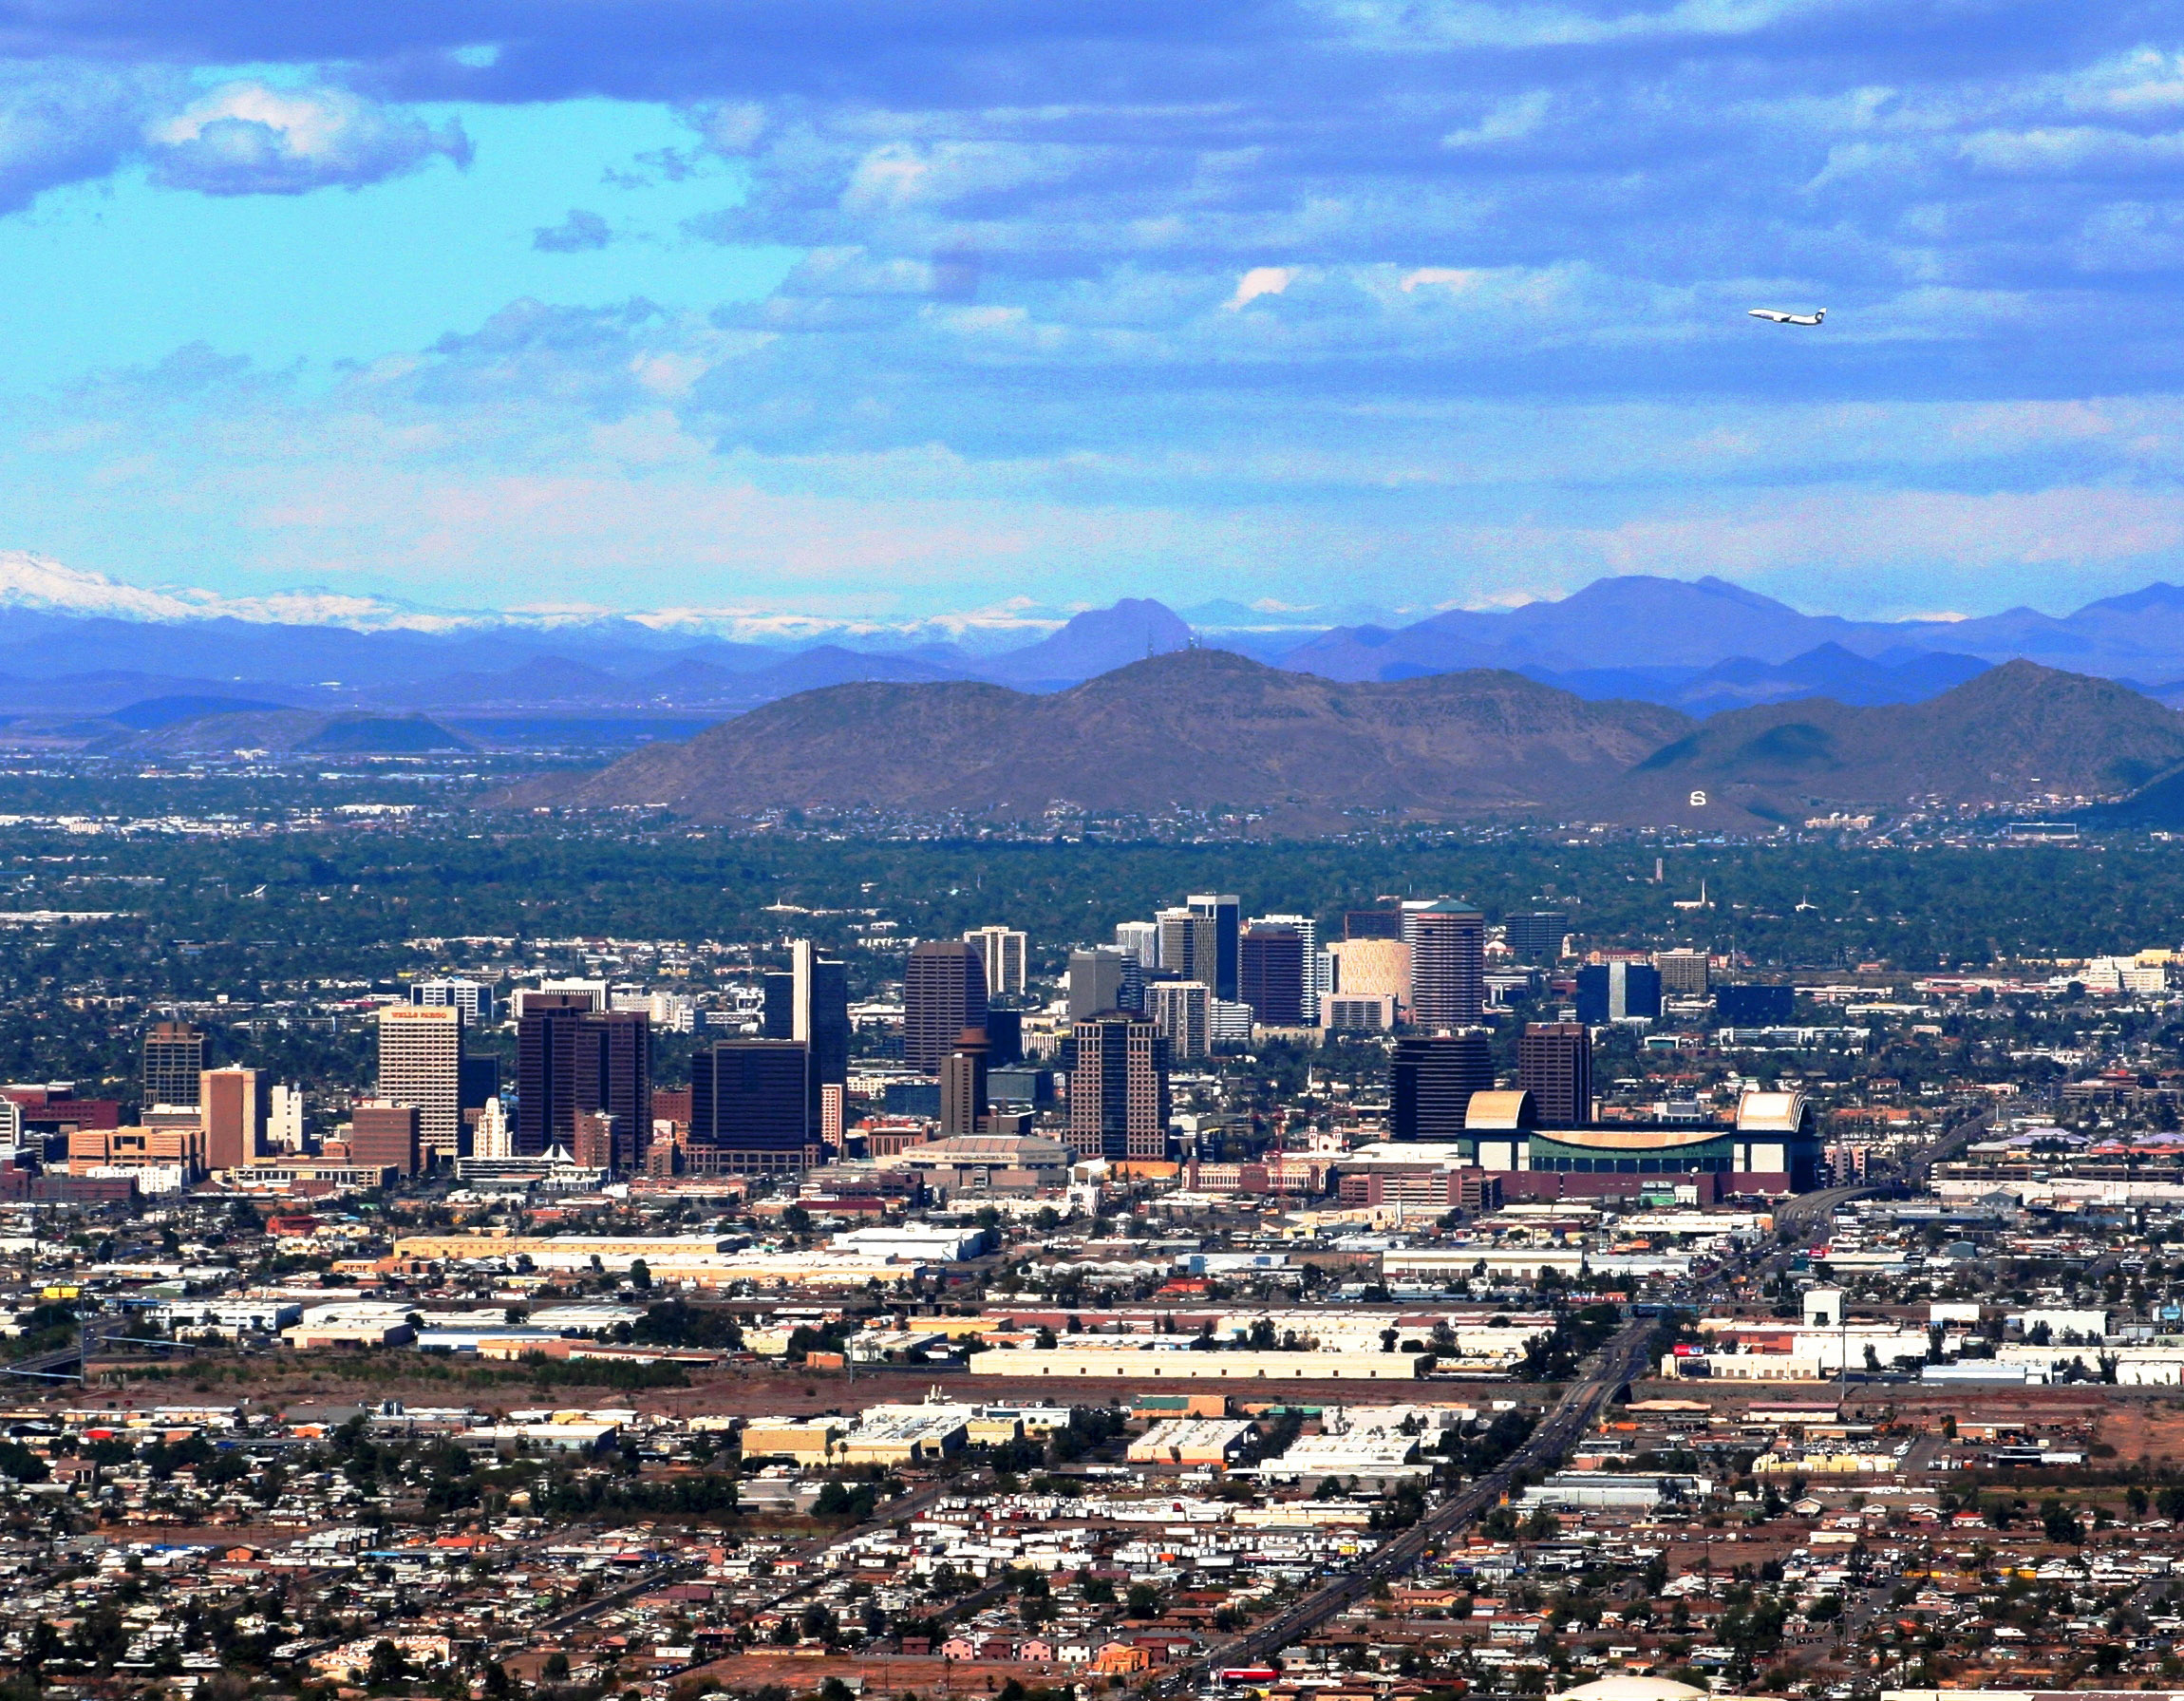 Northern Skyline in Downtown Phoenix, î€€Arizonaî€ image - Free stock photo ...